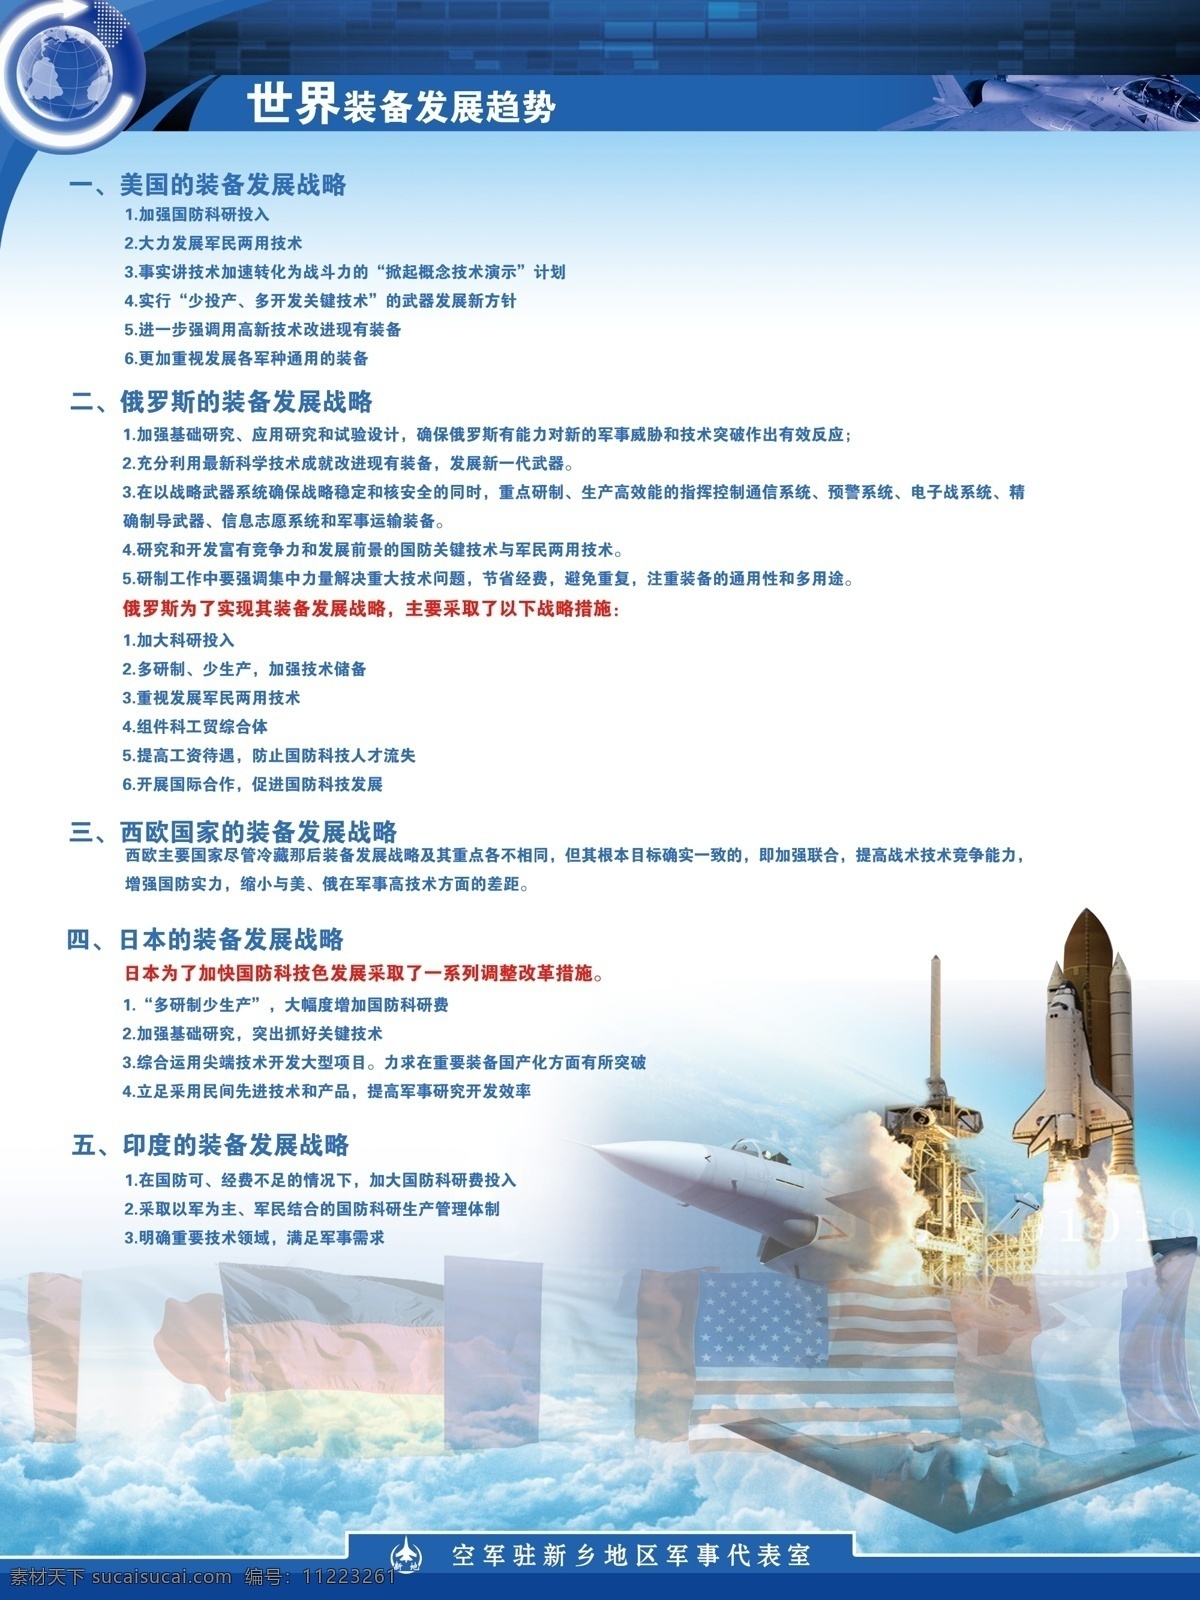 飞机 广告设计模板 国旗 航天 简约 军事 科技 蓝色 展板 模板下载 科技军事展板 云海 世界 清爽 展板模板 源文件 矢量图 现代科技